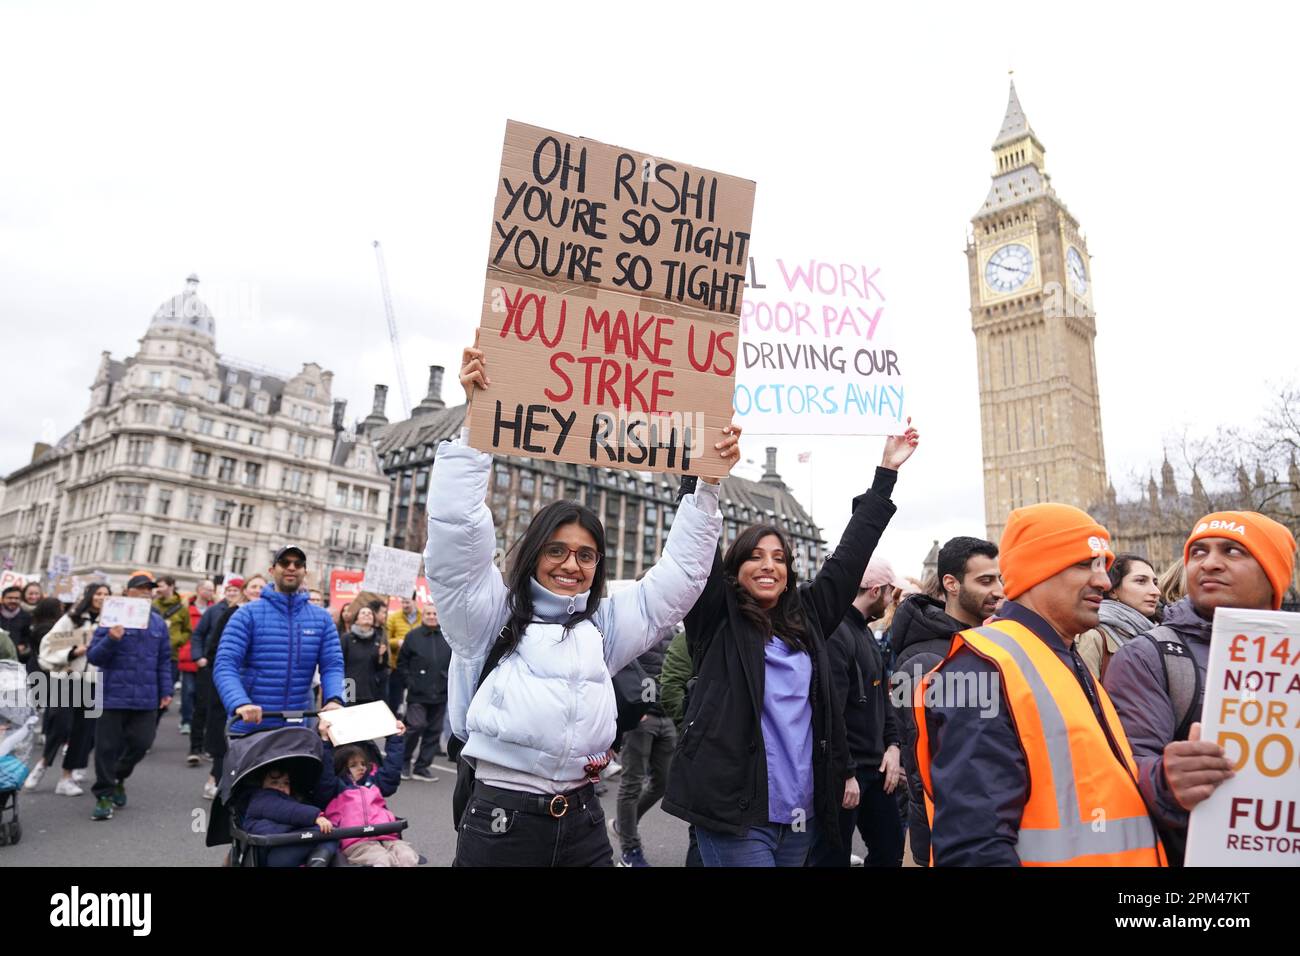 La gente partecipa a un rally a Trafalgar Square a Londra, a sostegno di medici in formazione NHS, mentre la British Medical Association tiene una passeggiata di 96 ore in una disputa sulla retribuzione. Data immagine: Martedì 11 aprile 2023. Foto Stock